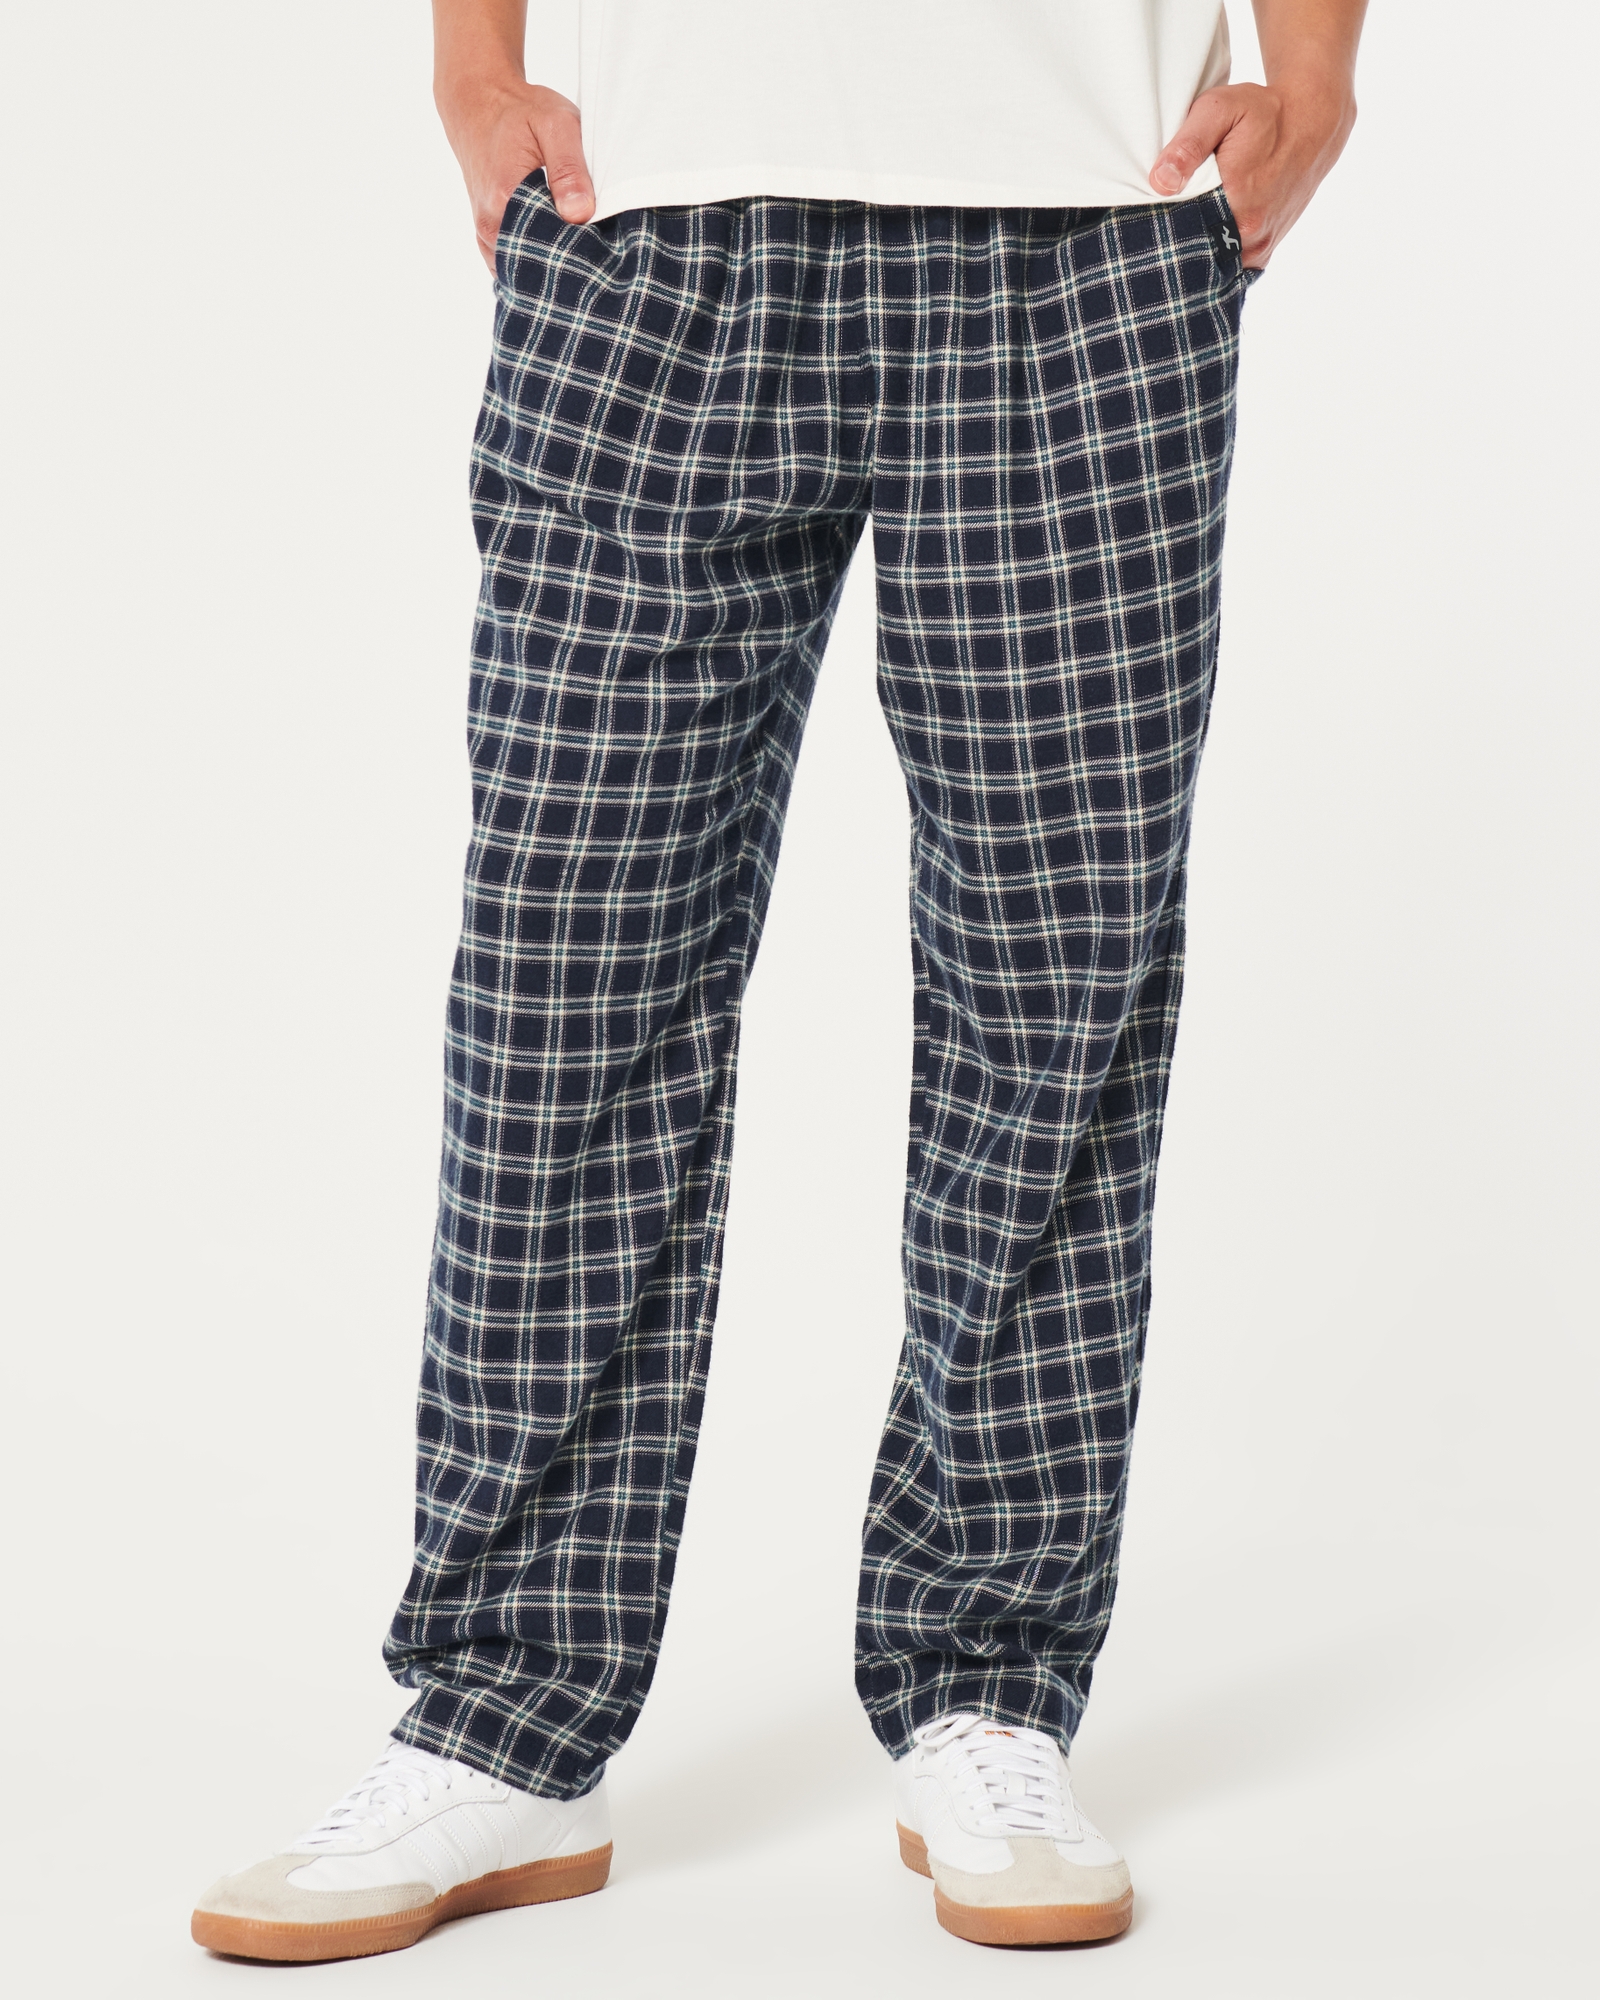 Hollister Men's Size Medium Red Flannel Sleepwear Lounge Pants